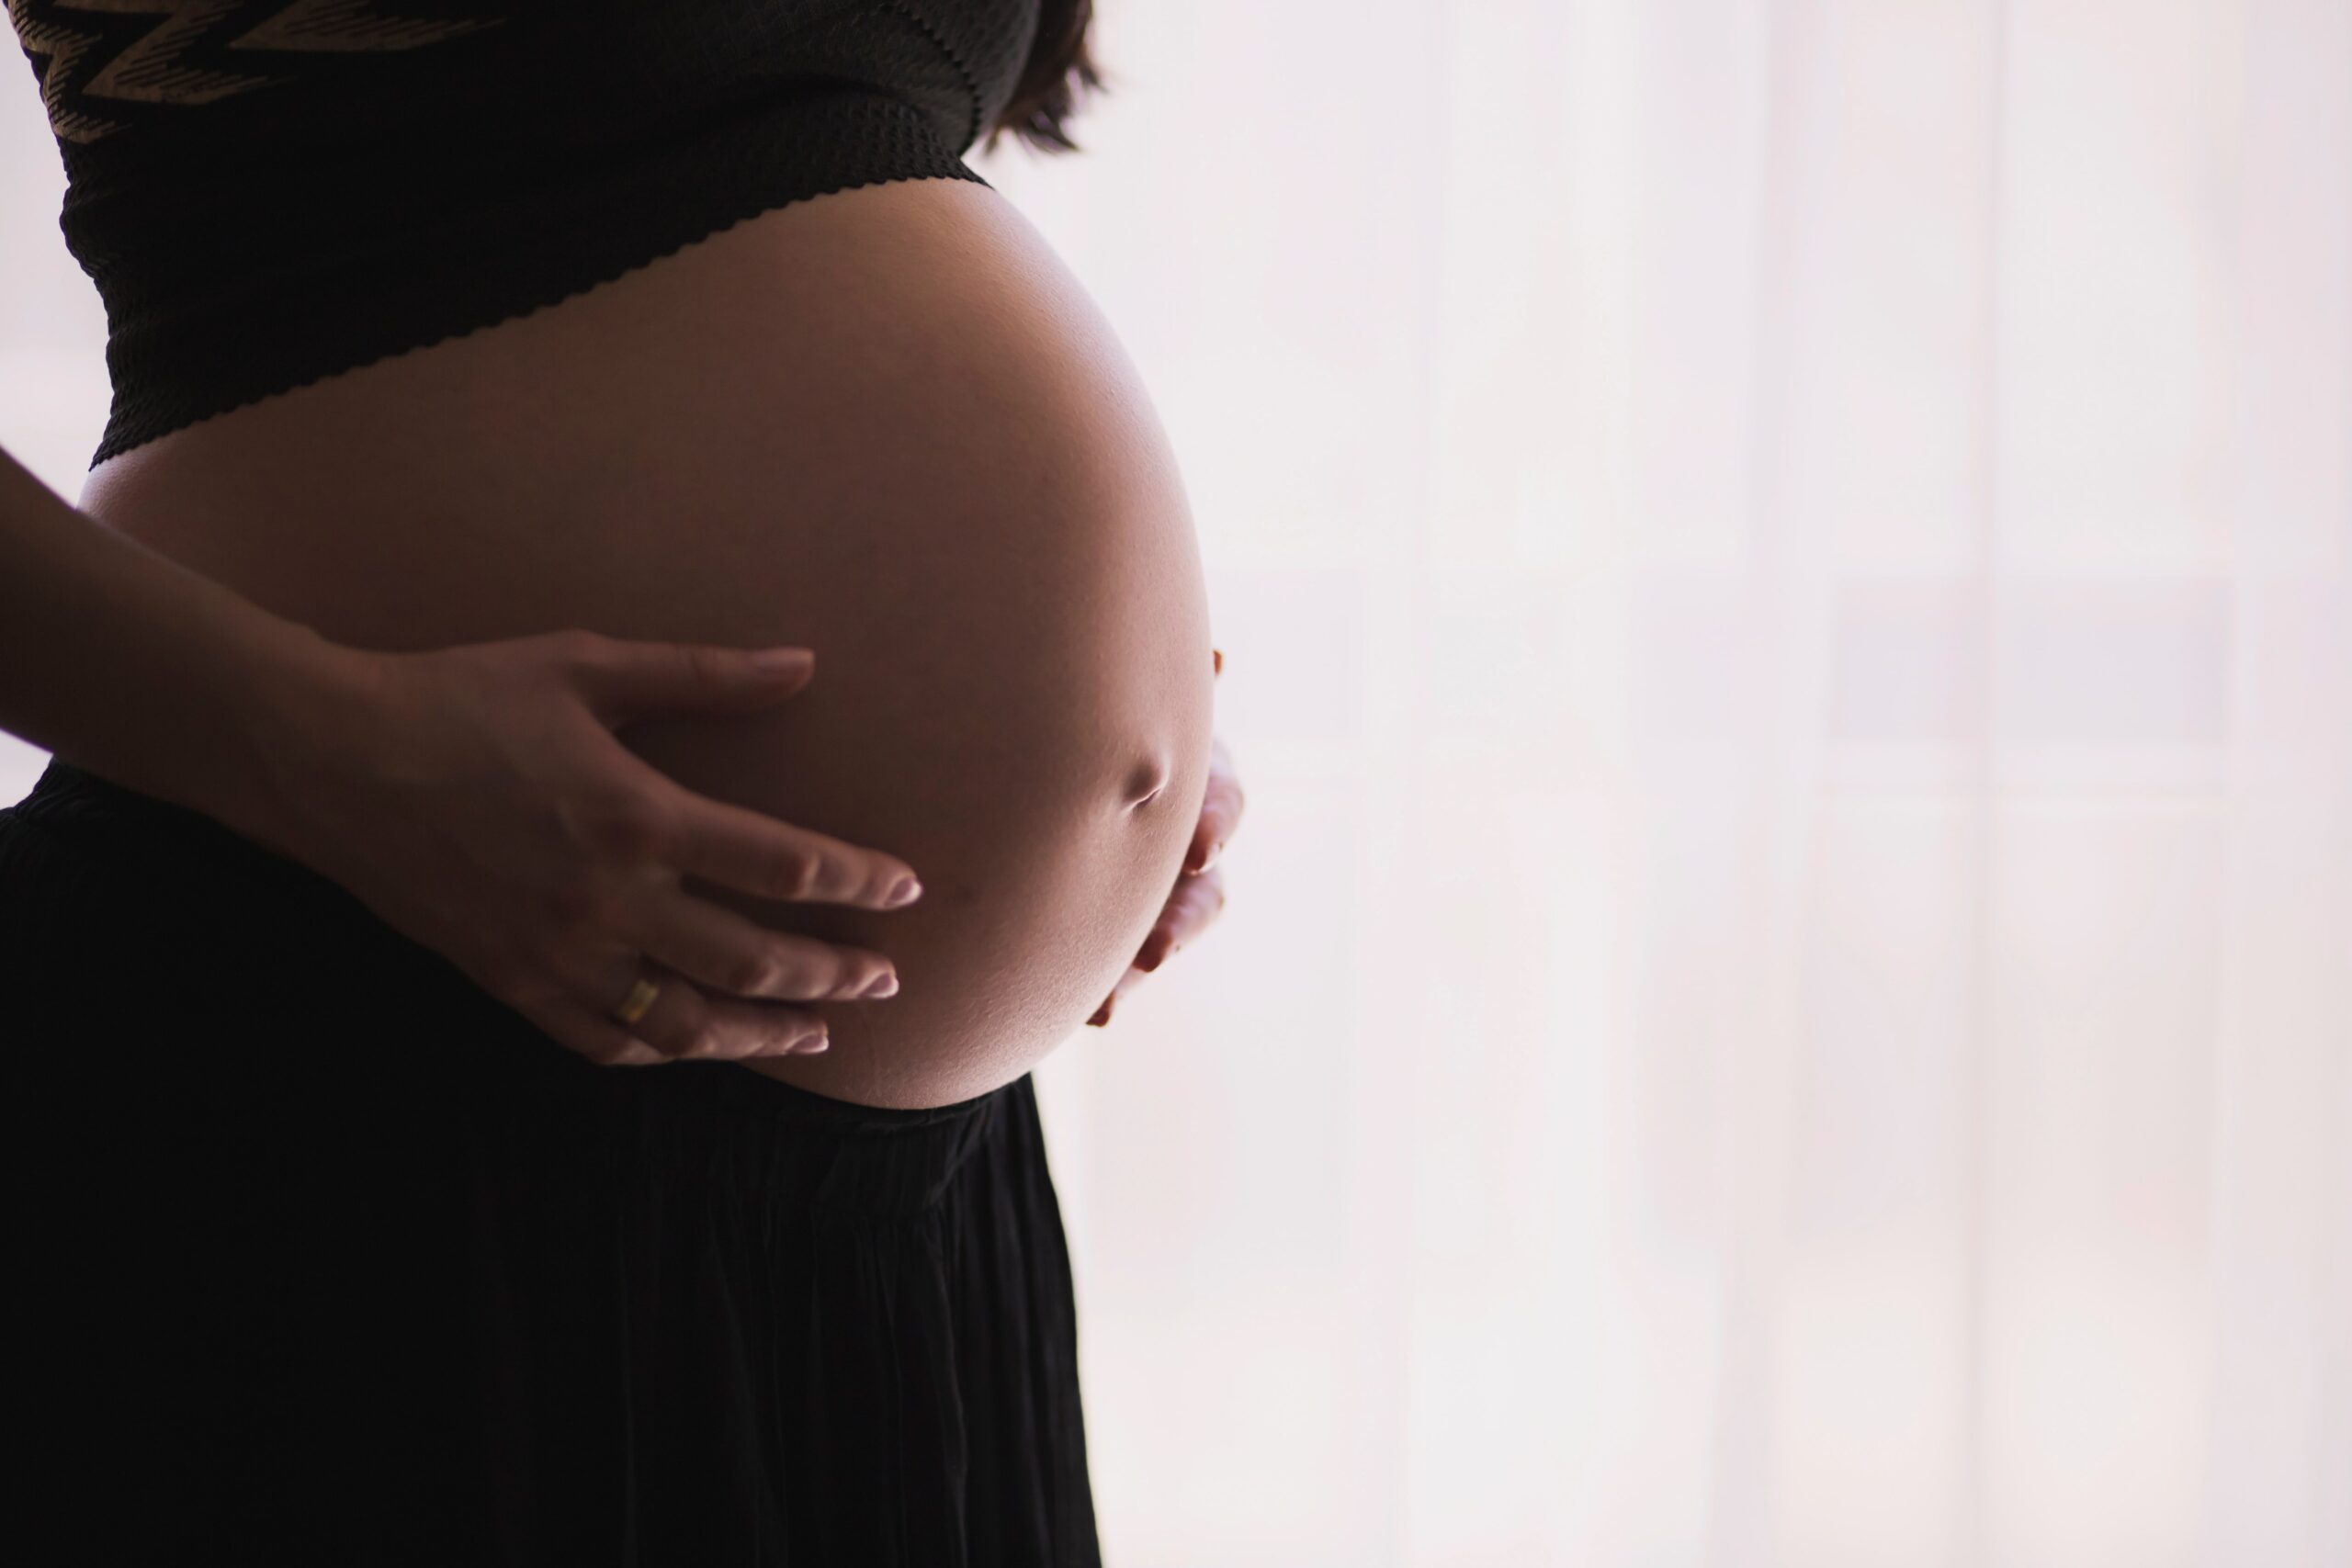 zwangerschapsbegeleiding fertiliteit kinesist osteopaat gezond zwanger geraken bekkenpijn mindfull bevallen